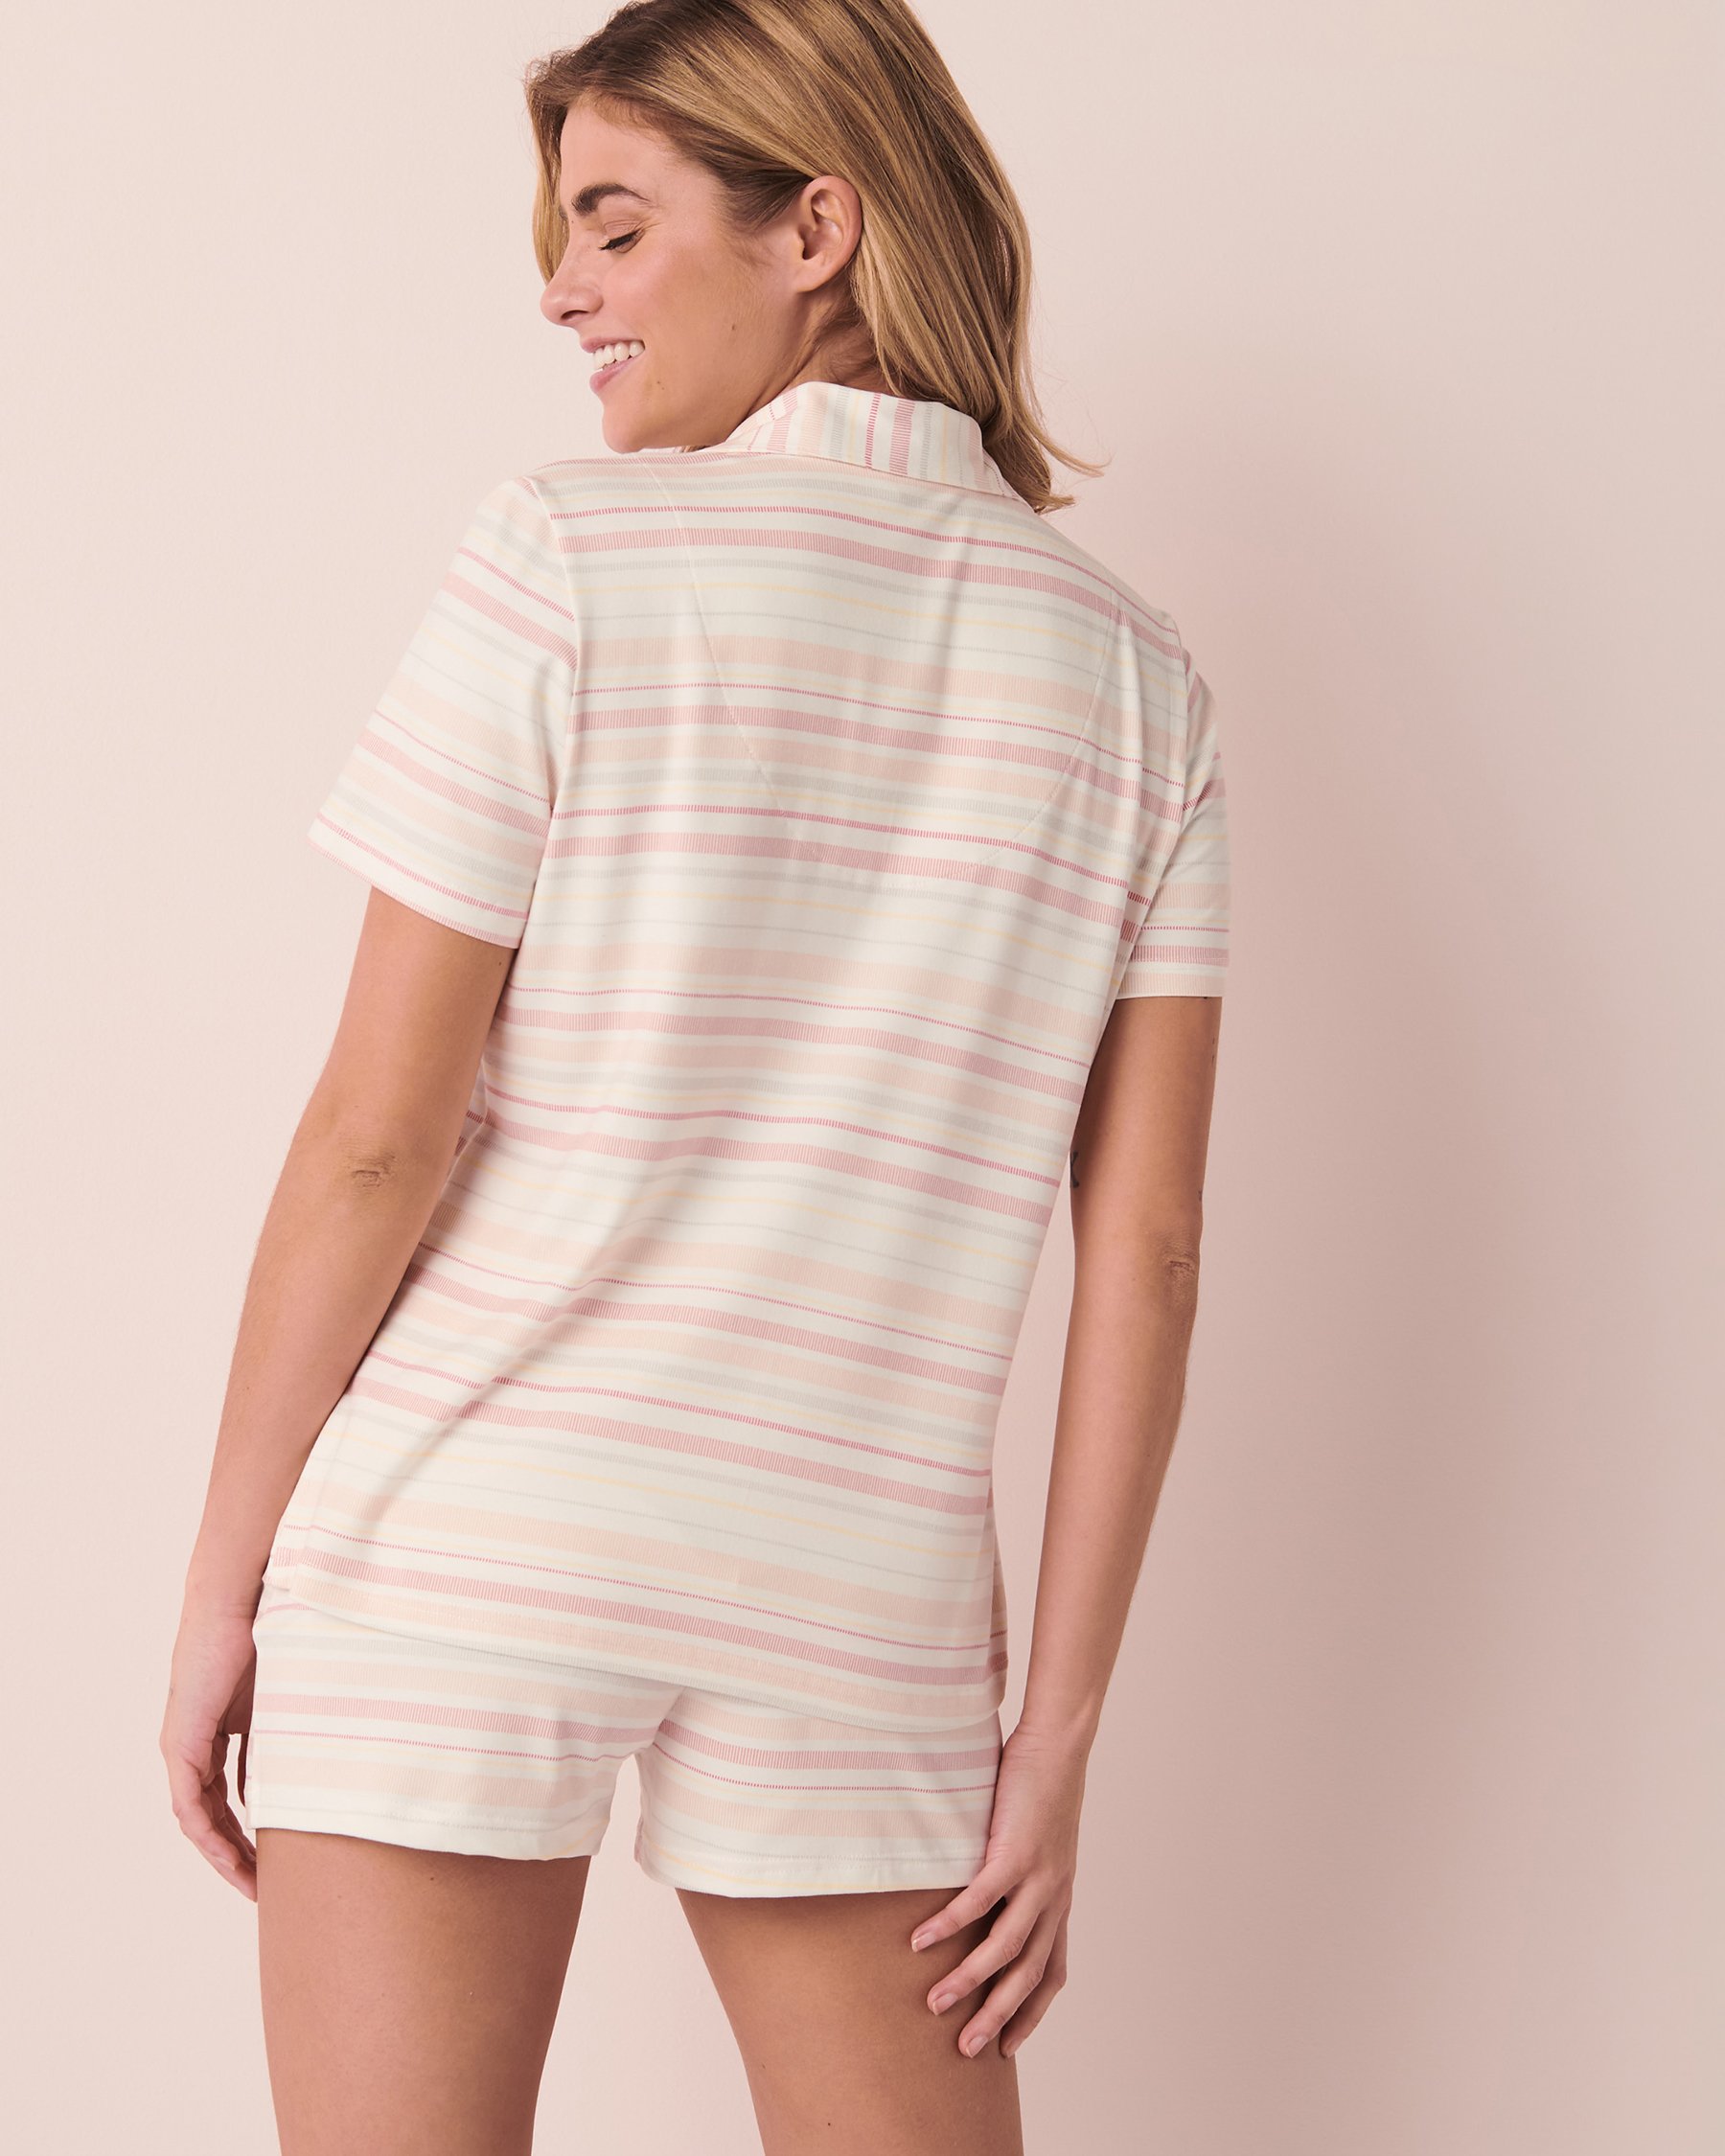 La Vie en Rose Super Soft Short Sleeve Button-down Shirt. 5